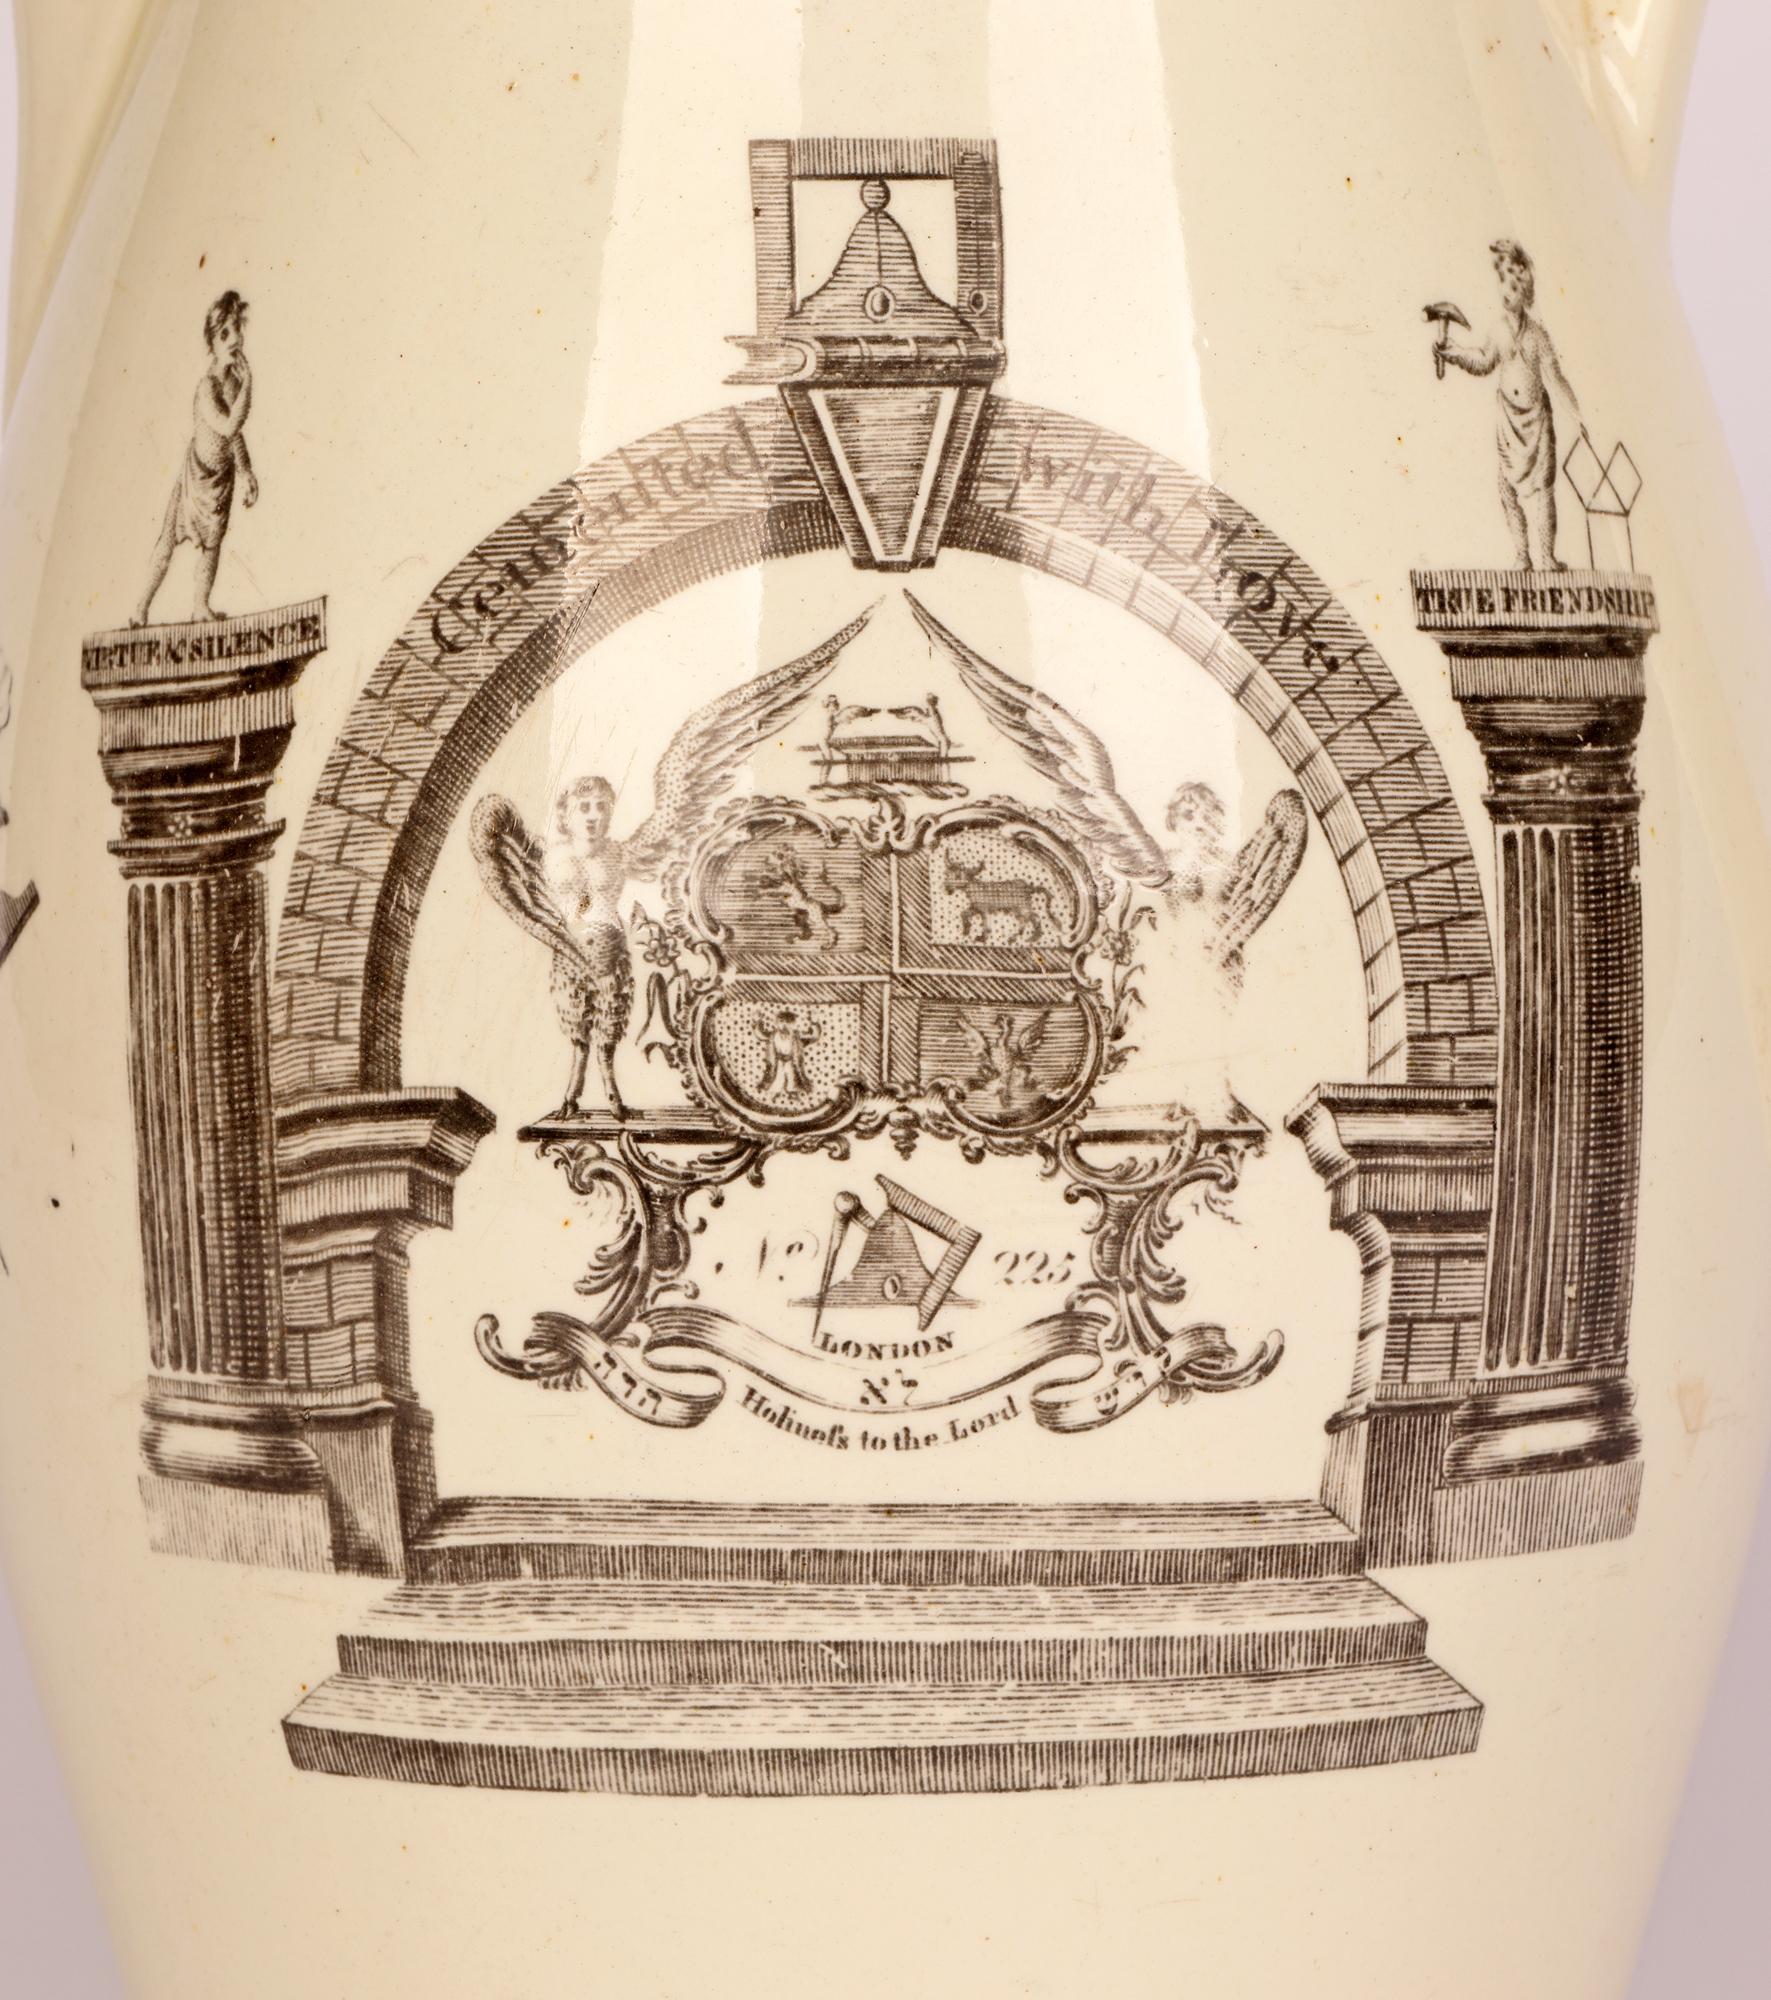 Rare grande cruche en poterie crème imprimée des armoiries londoniennes des Antients ou de la Grande Loge d'Athol, attribuée à Sadler and Green et datant de la fin du XVIIIe siècle. La cruche légèrement potée est imprimée en noir de chaque côté et